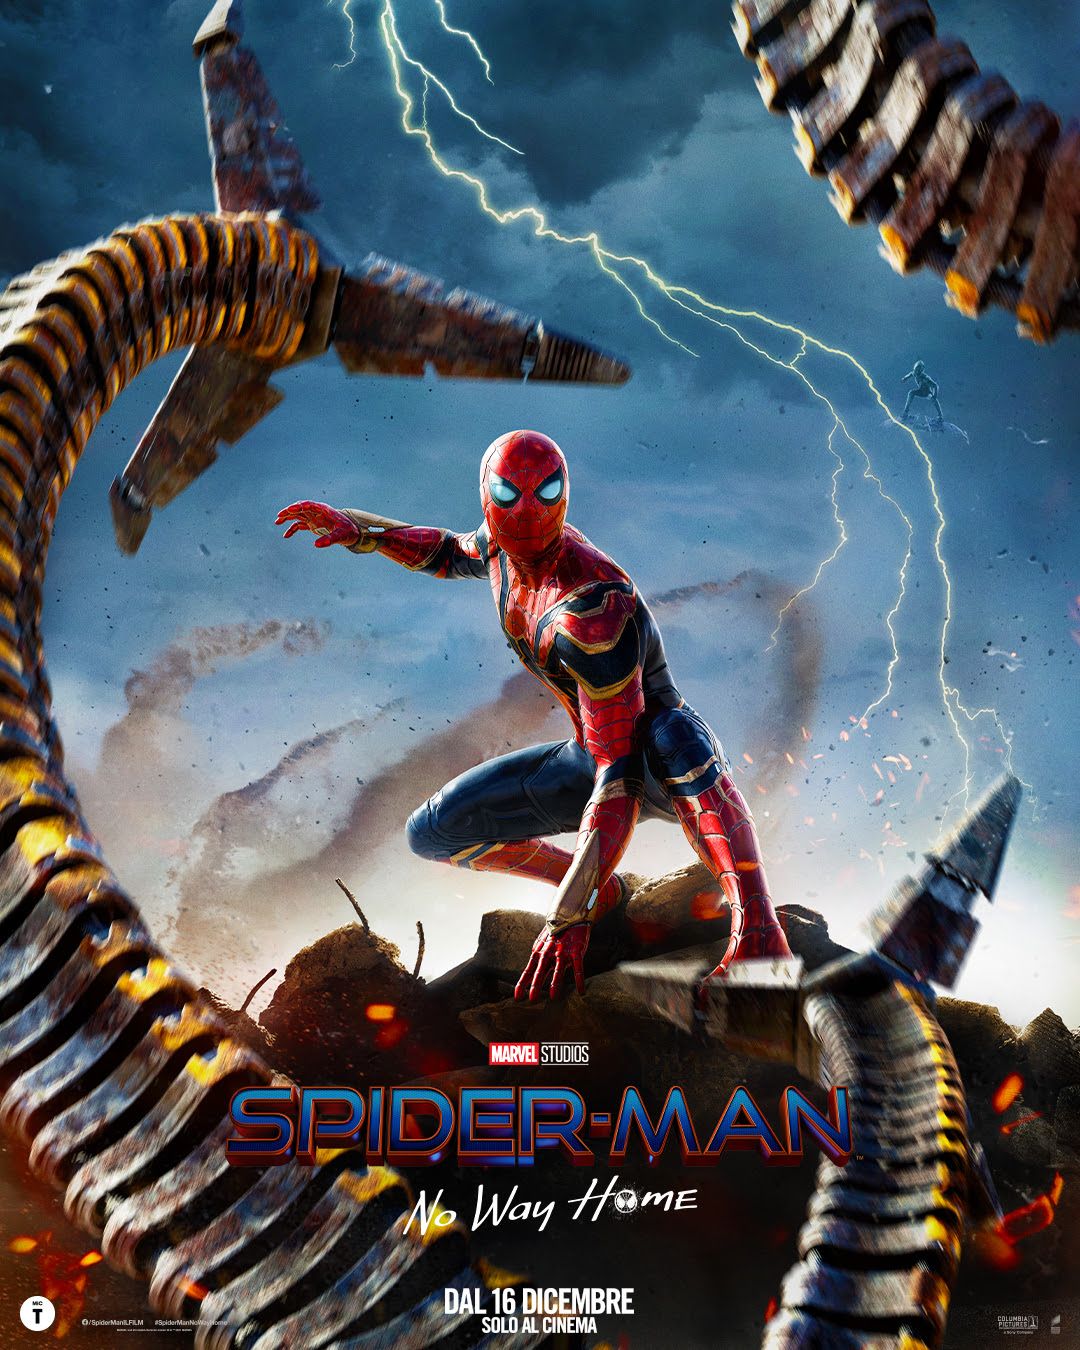 https://movieplayer.it/film/spider-man-no-way-home_52531/